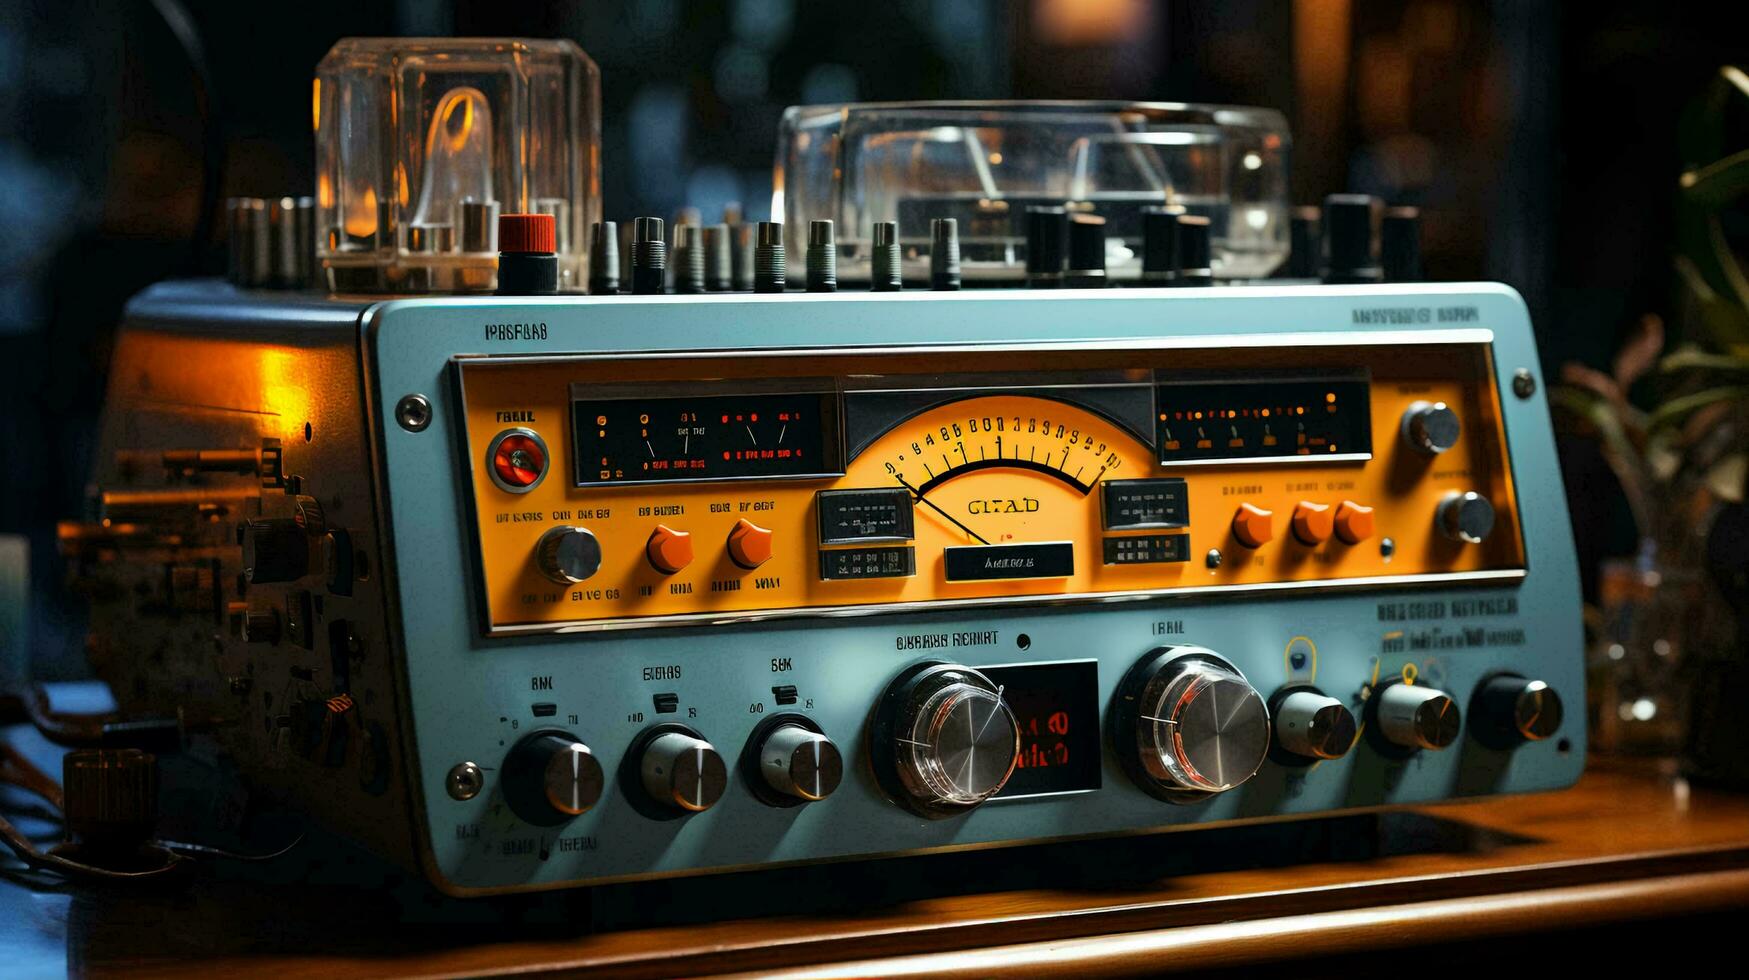 rétro vieux ancien radio pour écoute à la musique photo